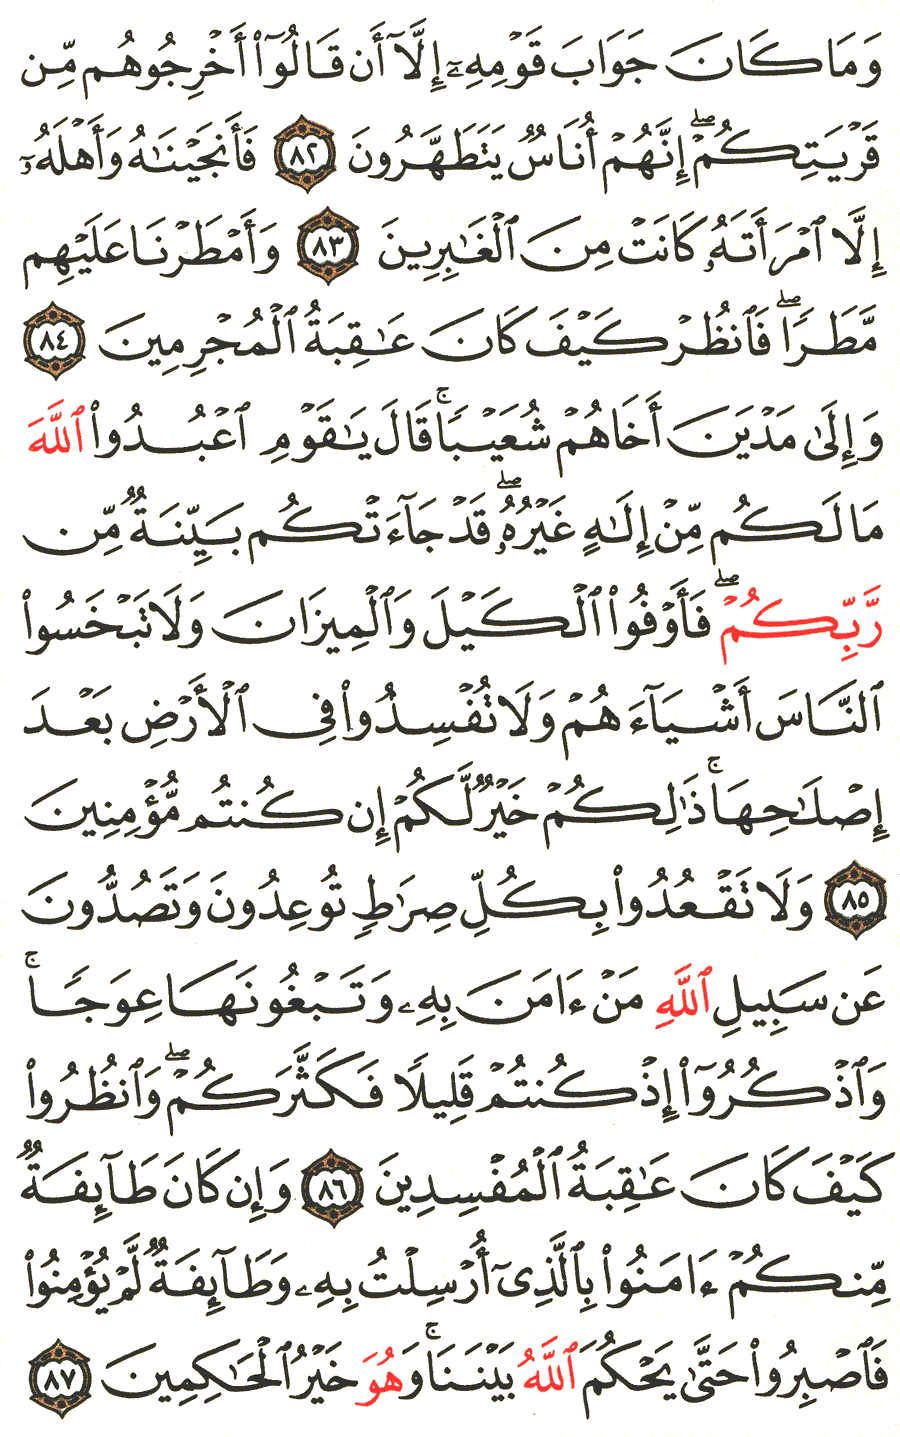 الصفحة 161 من القرآن الكريم